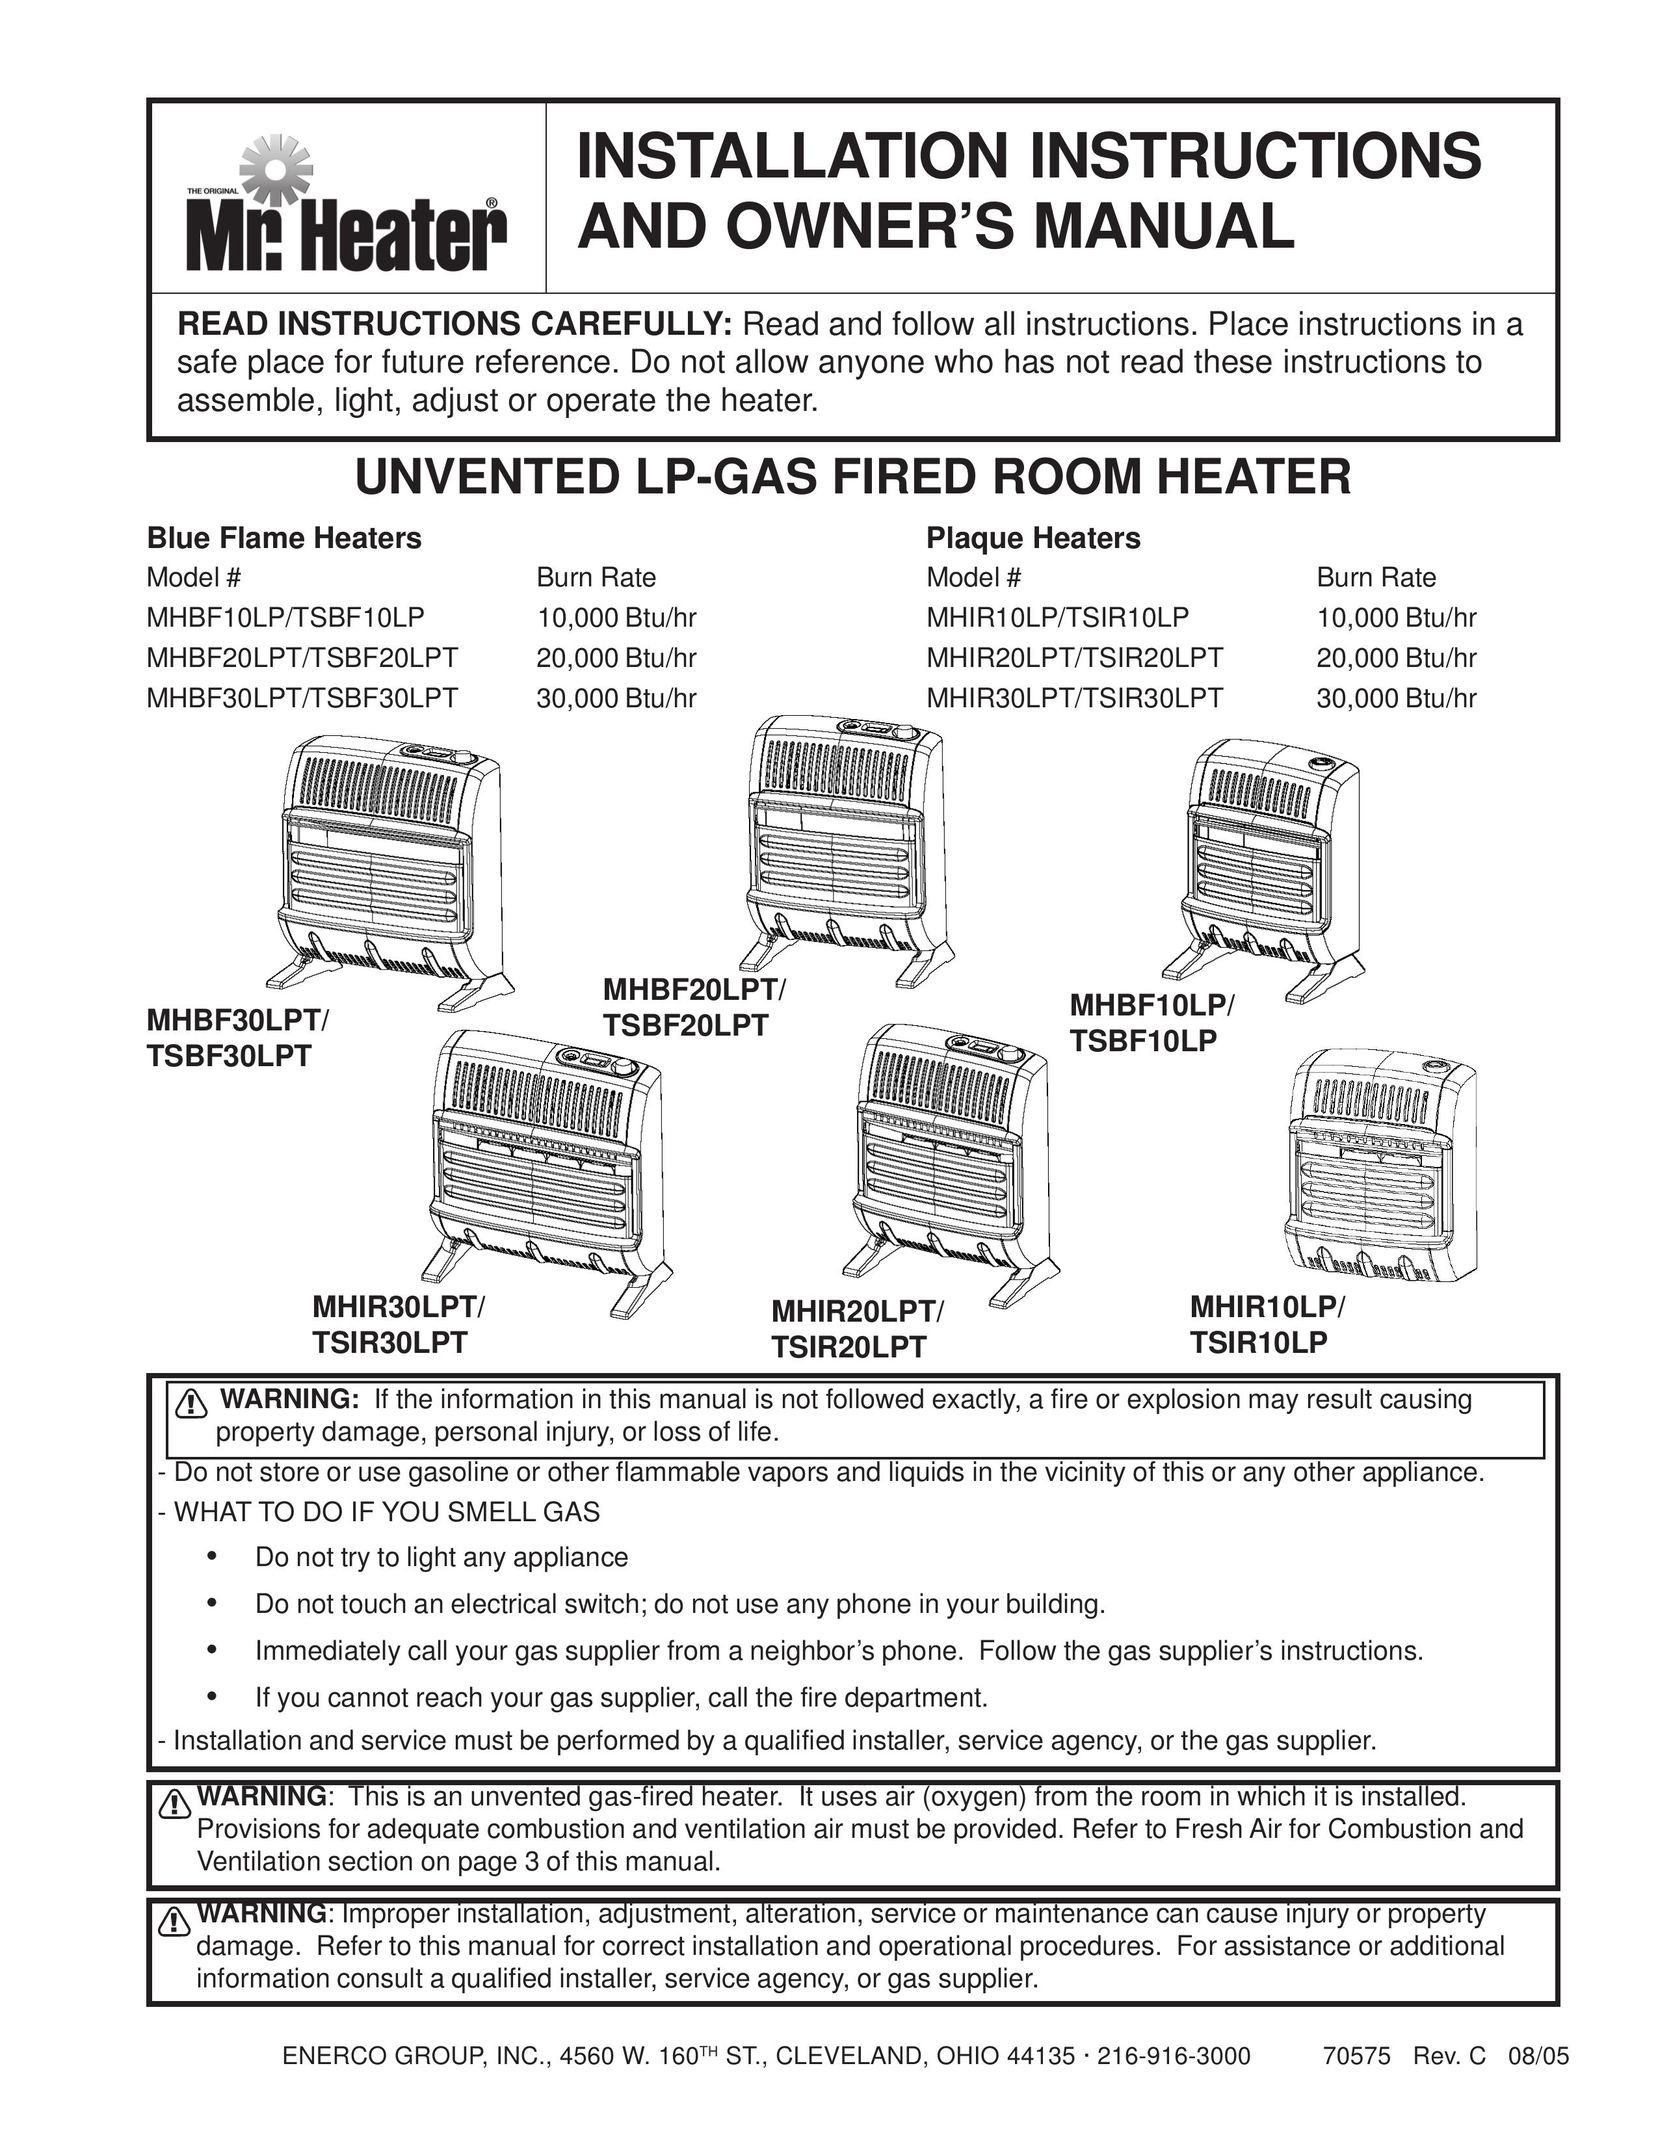 Enerco MHBF10LP Electric Heater User Manual